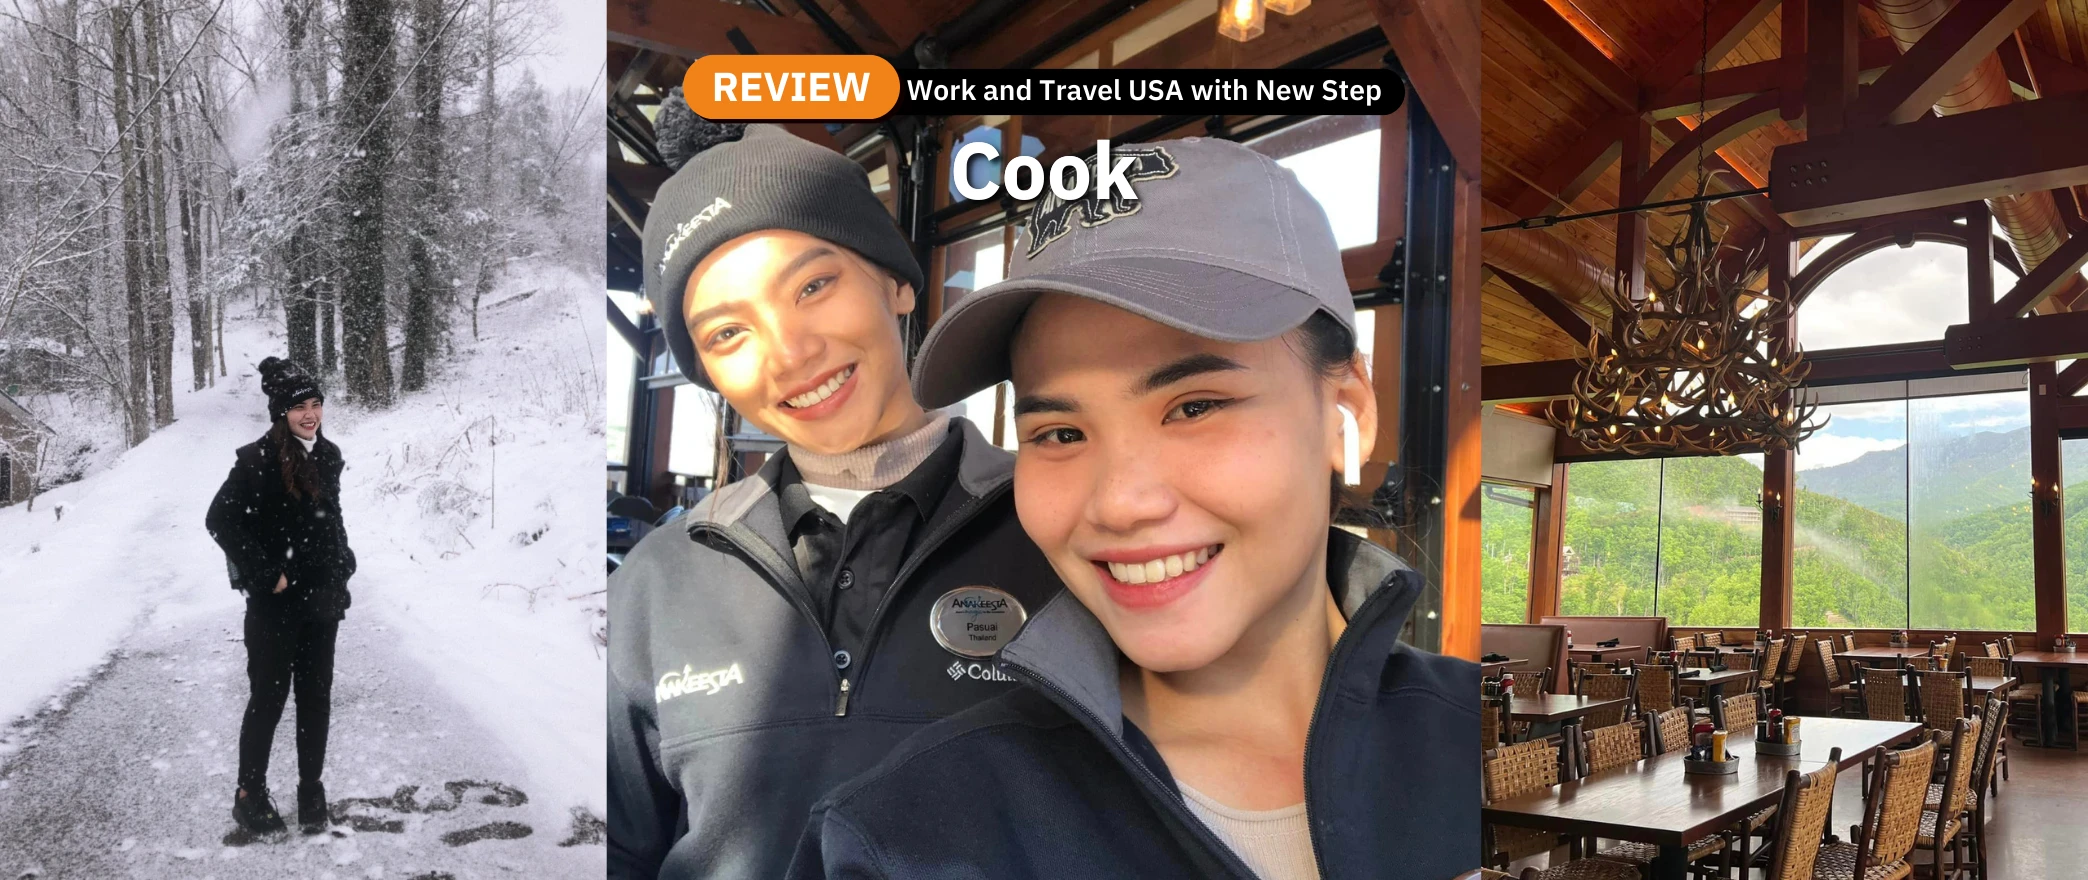 รีวิว review New Step Anakeesta Work and Travel Gatlinburg Tennessee wat2022 cook food team ทำงานต่างประเทศ แลกเปลี่ยนวัฒนธรรม ทำงานปิดเทอม ฝึกภาษา อังกฤษ smoky mountains